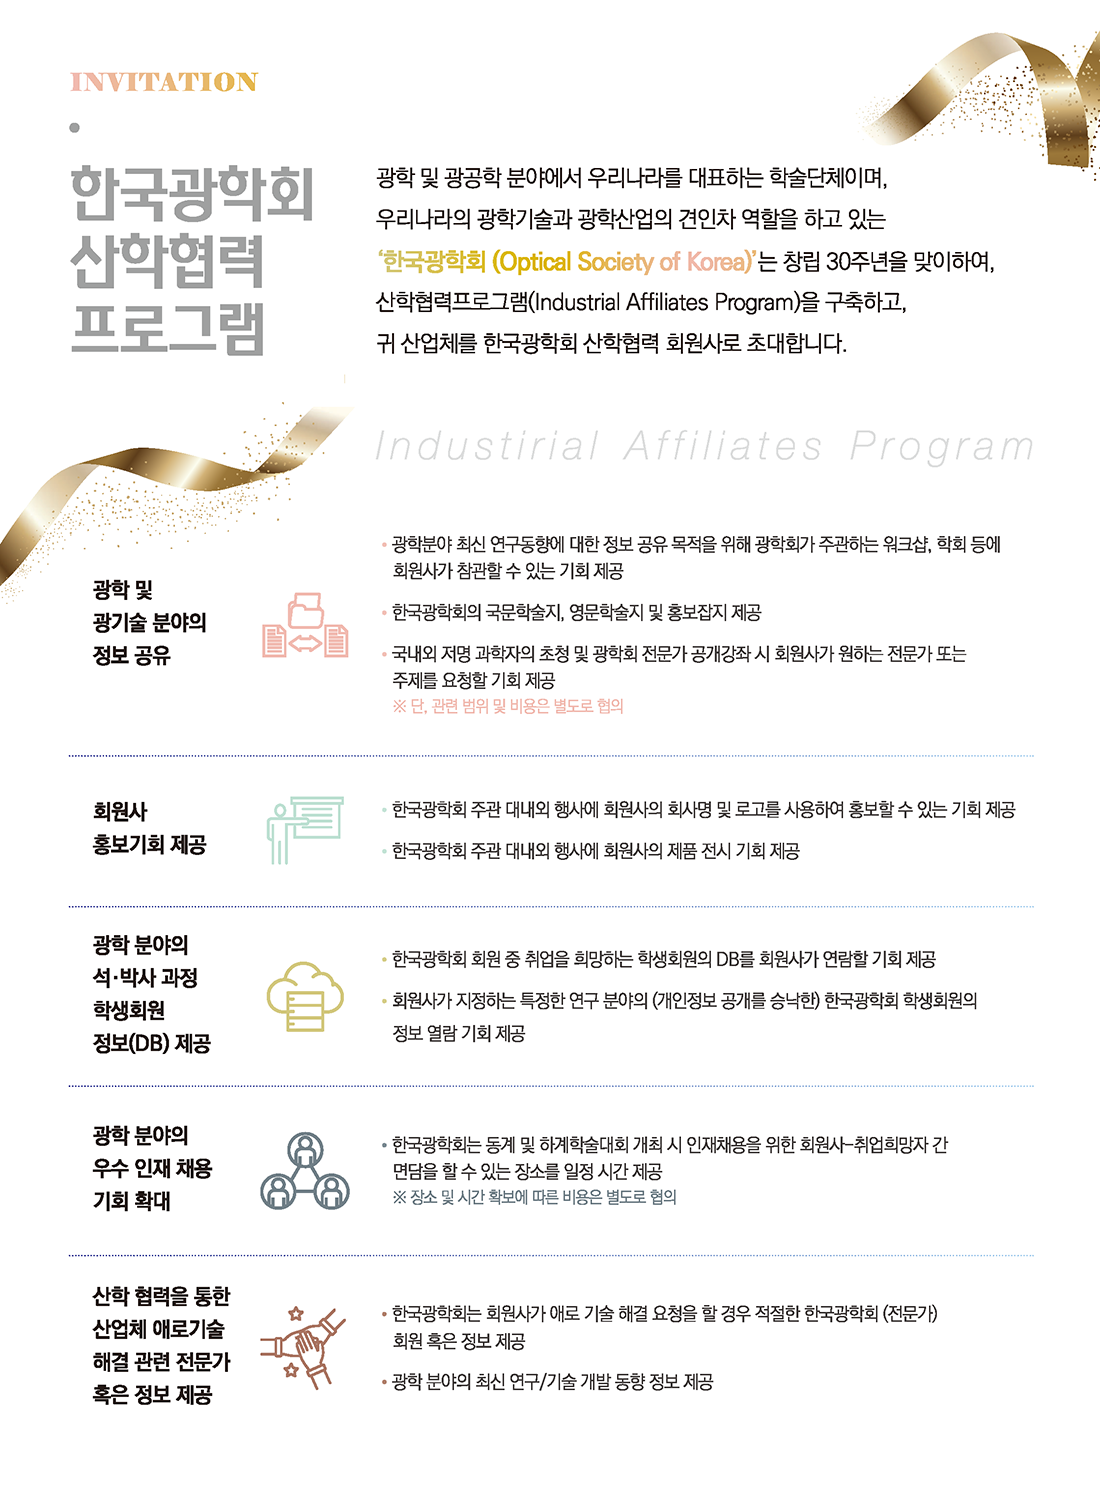 한국광학회 산한협력 프로그램